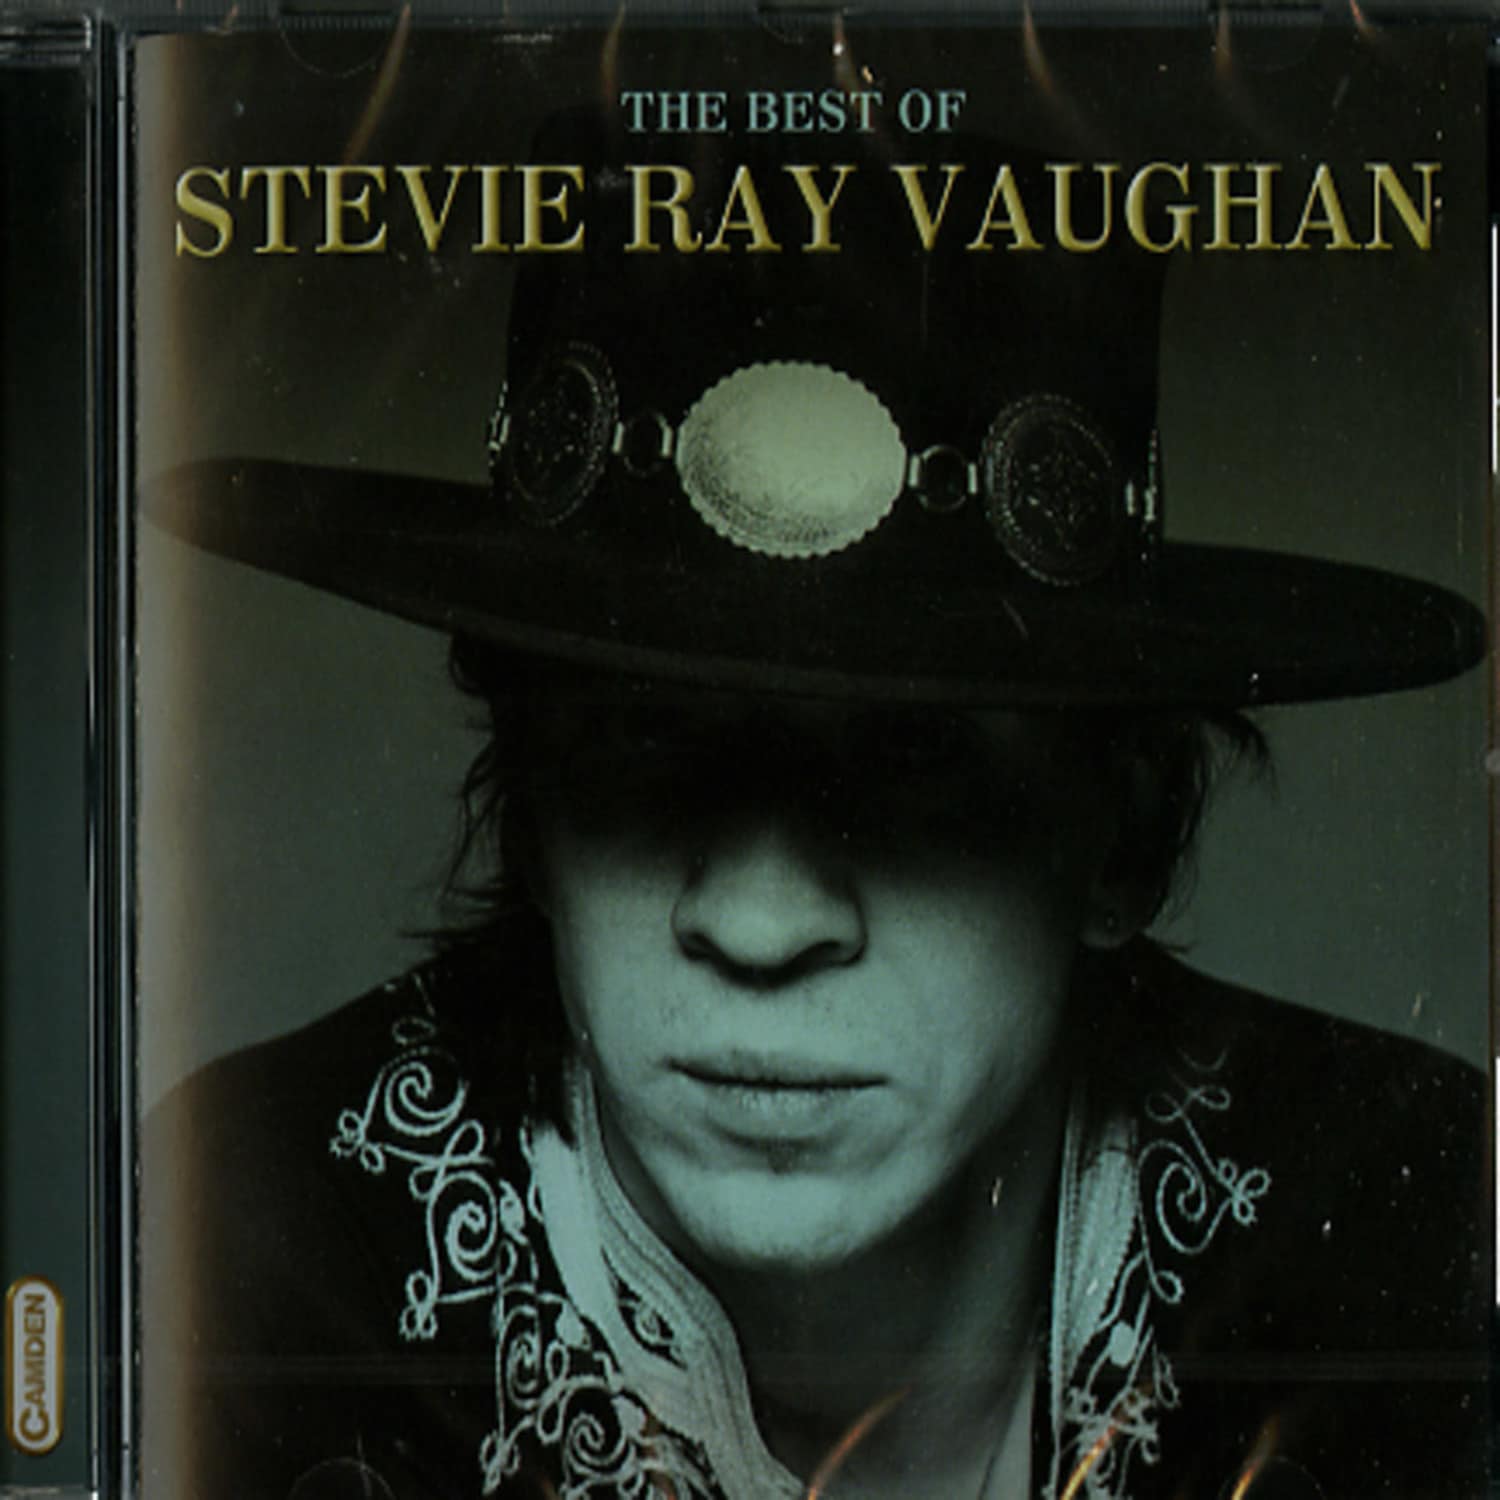 Stevie Ray Vaughan - BEST OF 